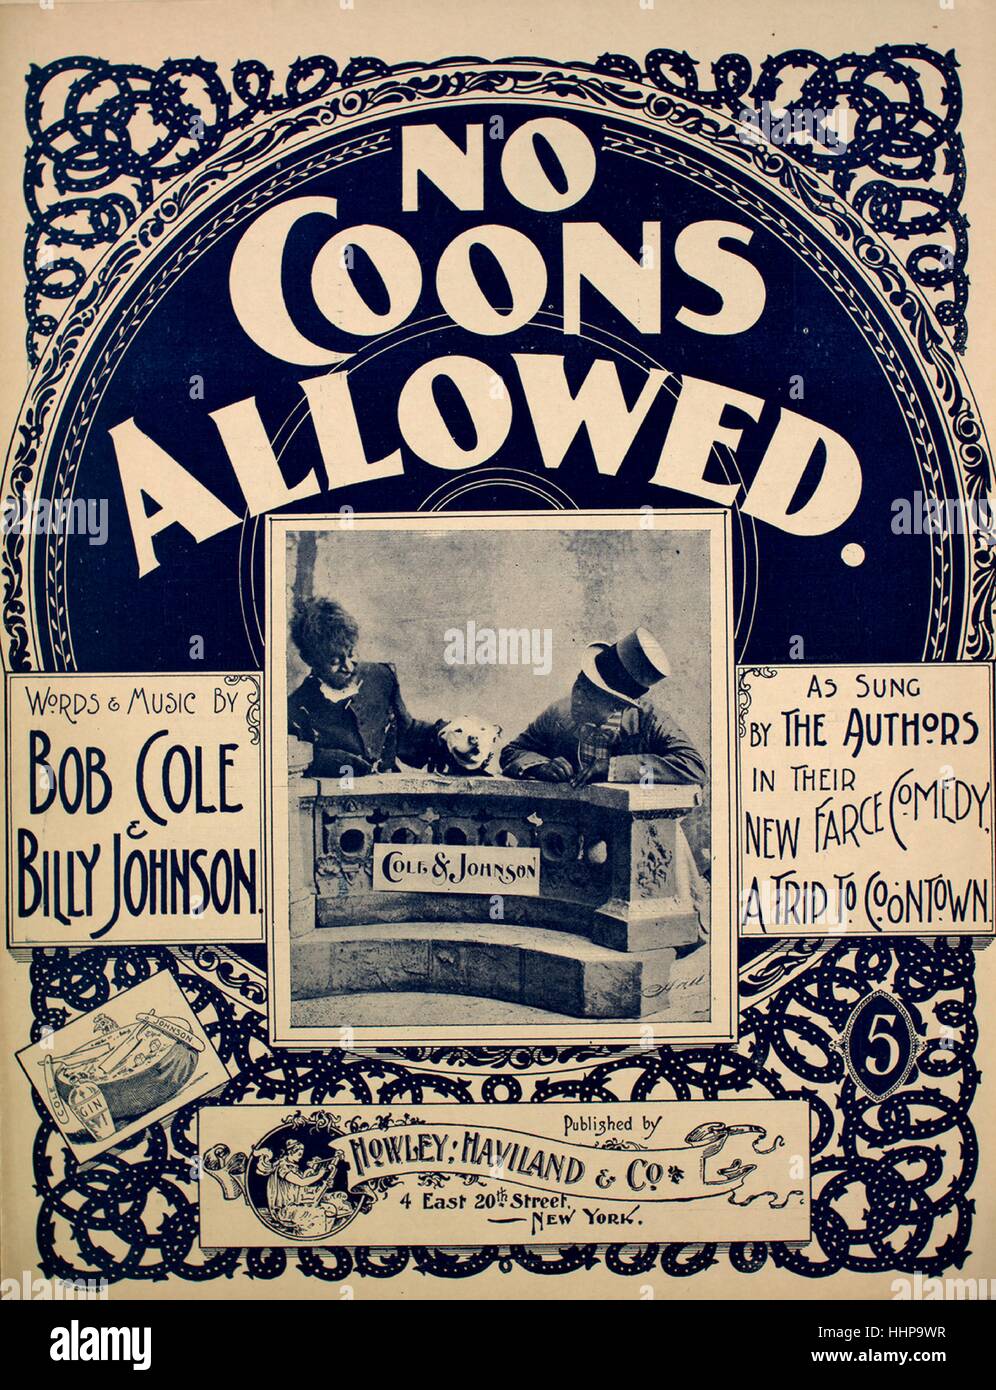 Sheet Music image de couverture de la chanson "non autorisé", avec Coons  auteur original 'Lecture notes Paroles et musique de Bob Cole et Billy  Johnson', United States, 1897. L'éditeur est répertorié comme "